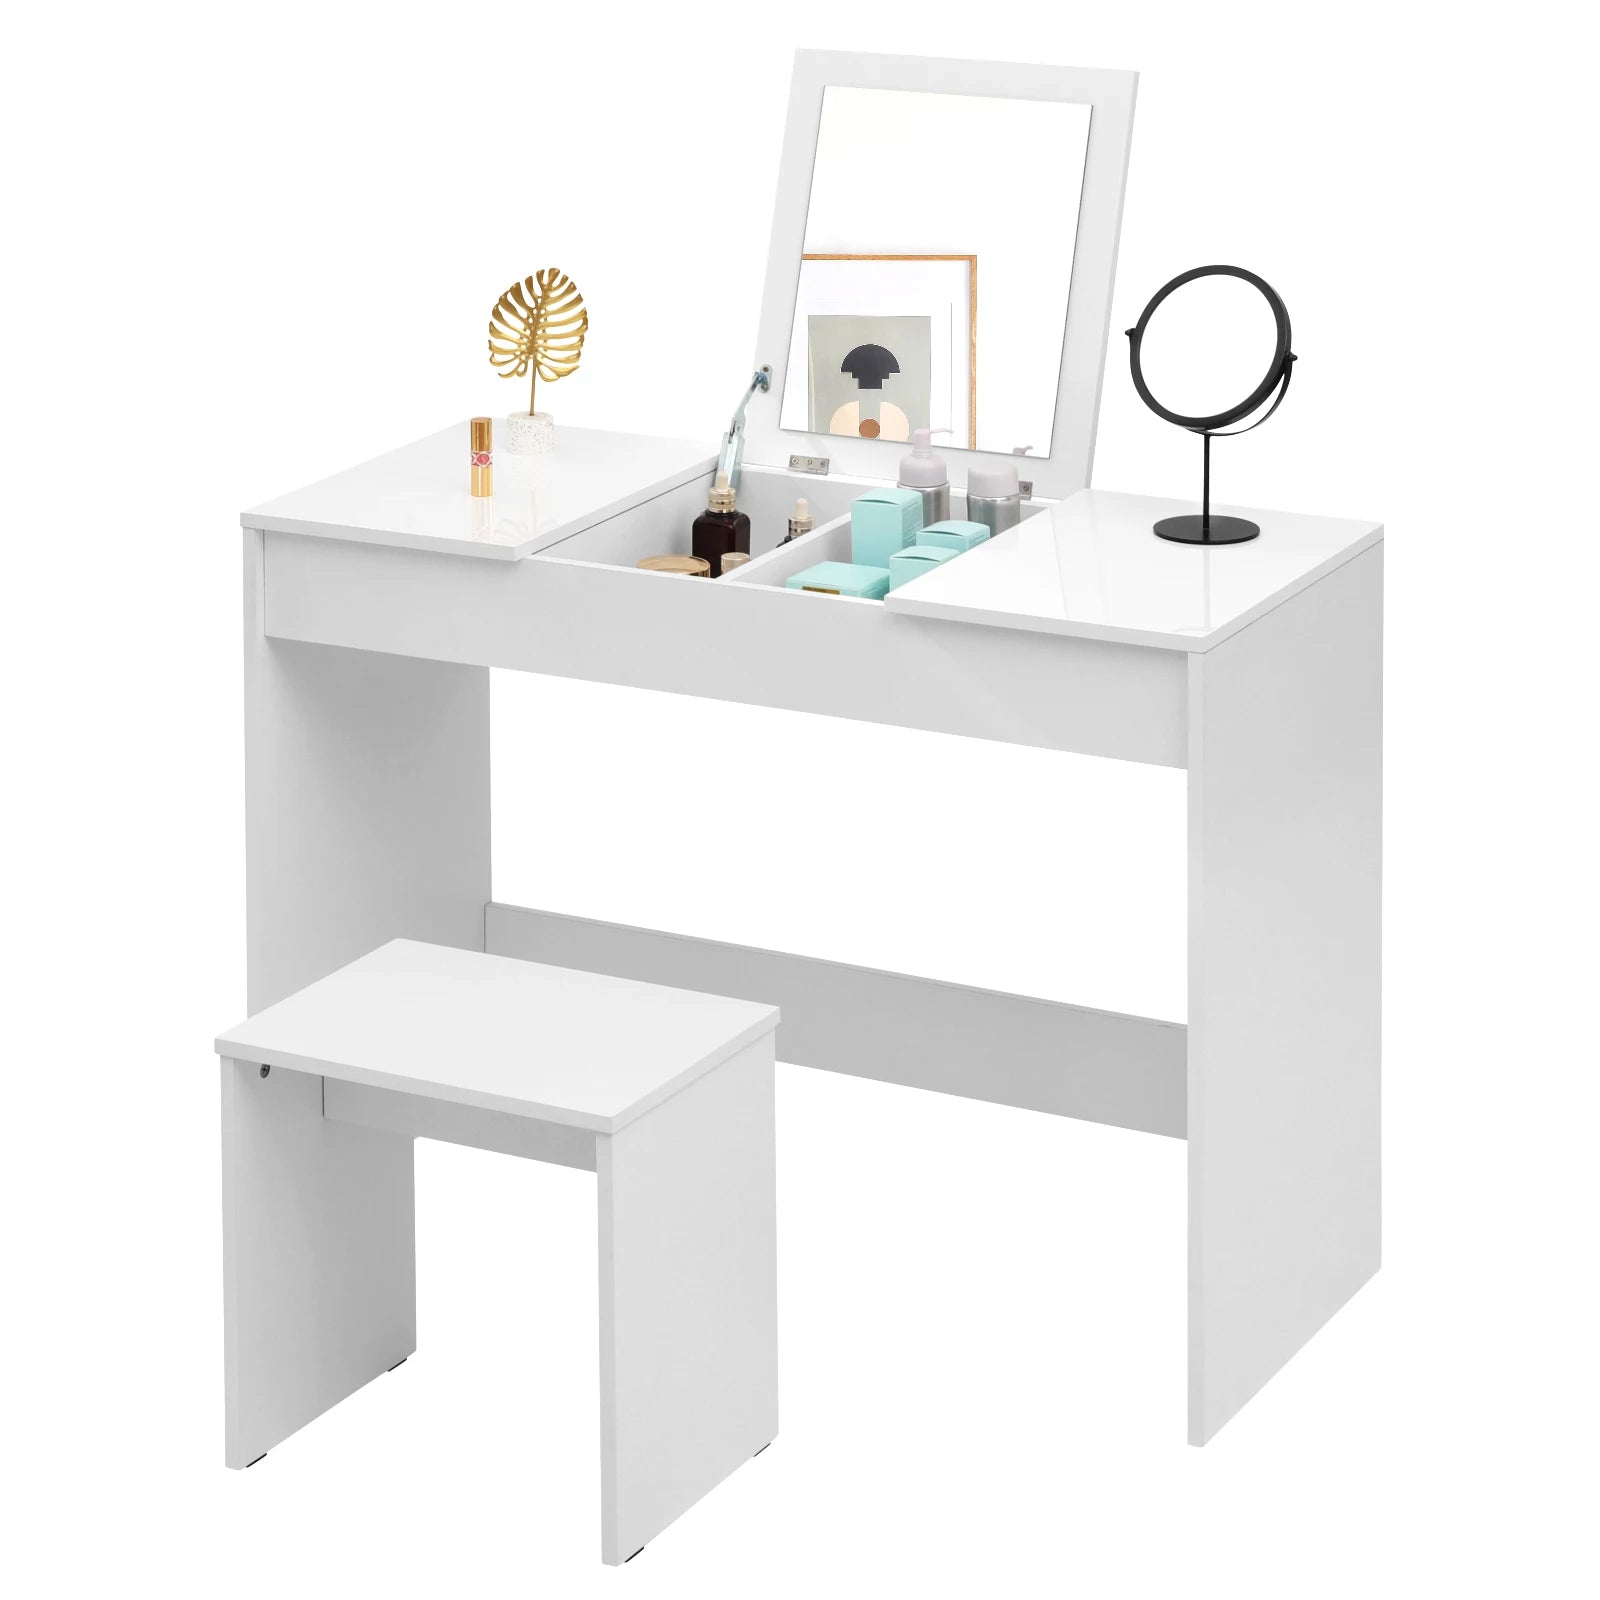 Weißer Schminktisch-Set mit Klappbarem Spiegel und Hocker - Hochglanz Kosmetiktisch für Schlafzimmer - Unique Outlet